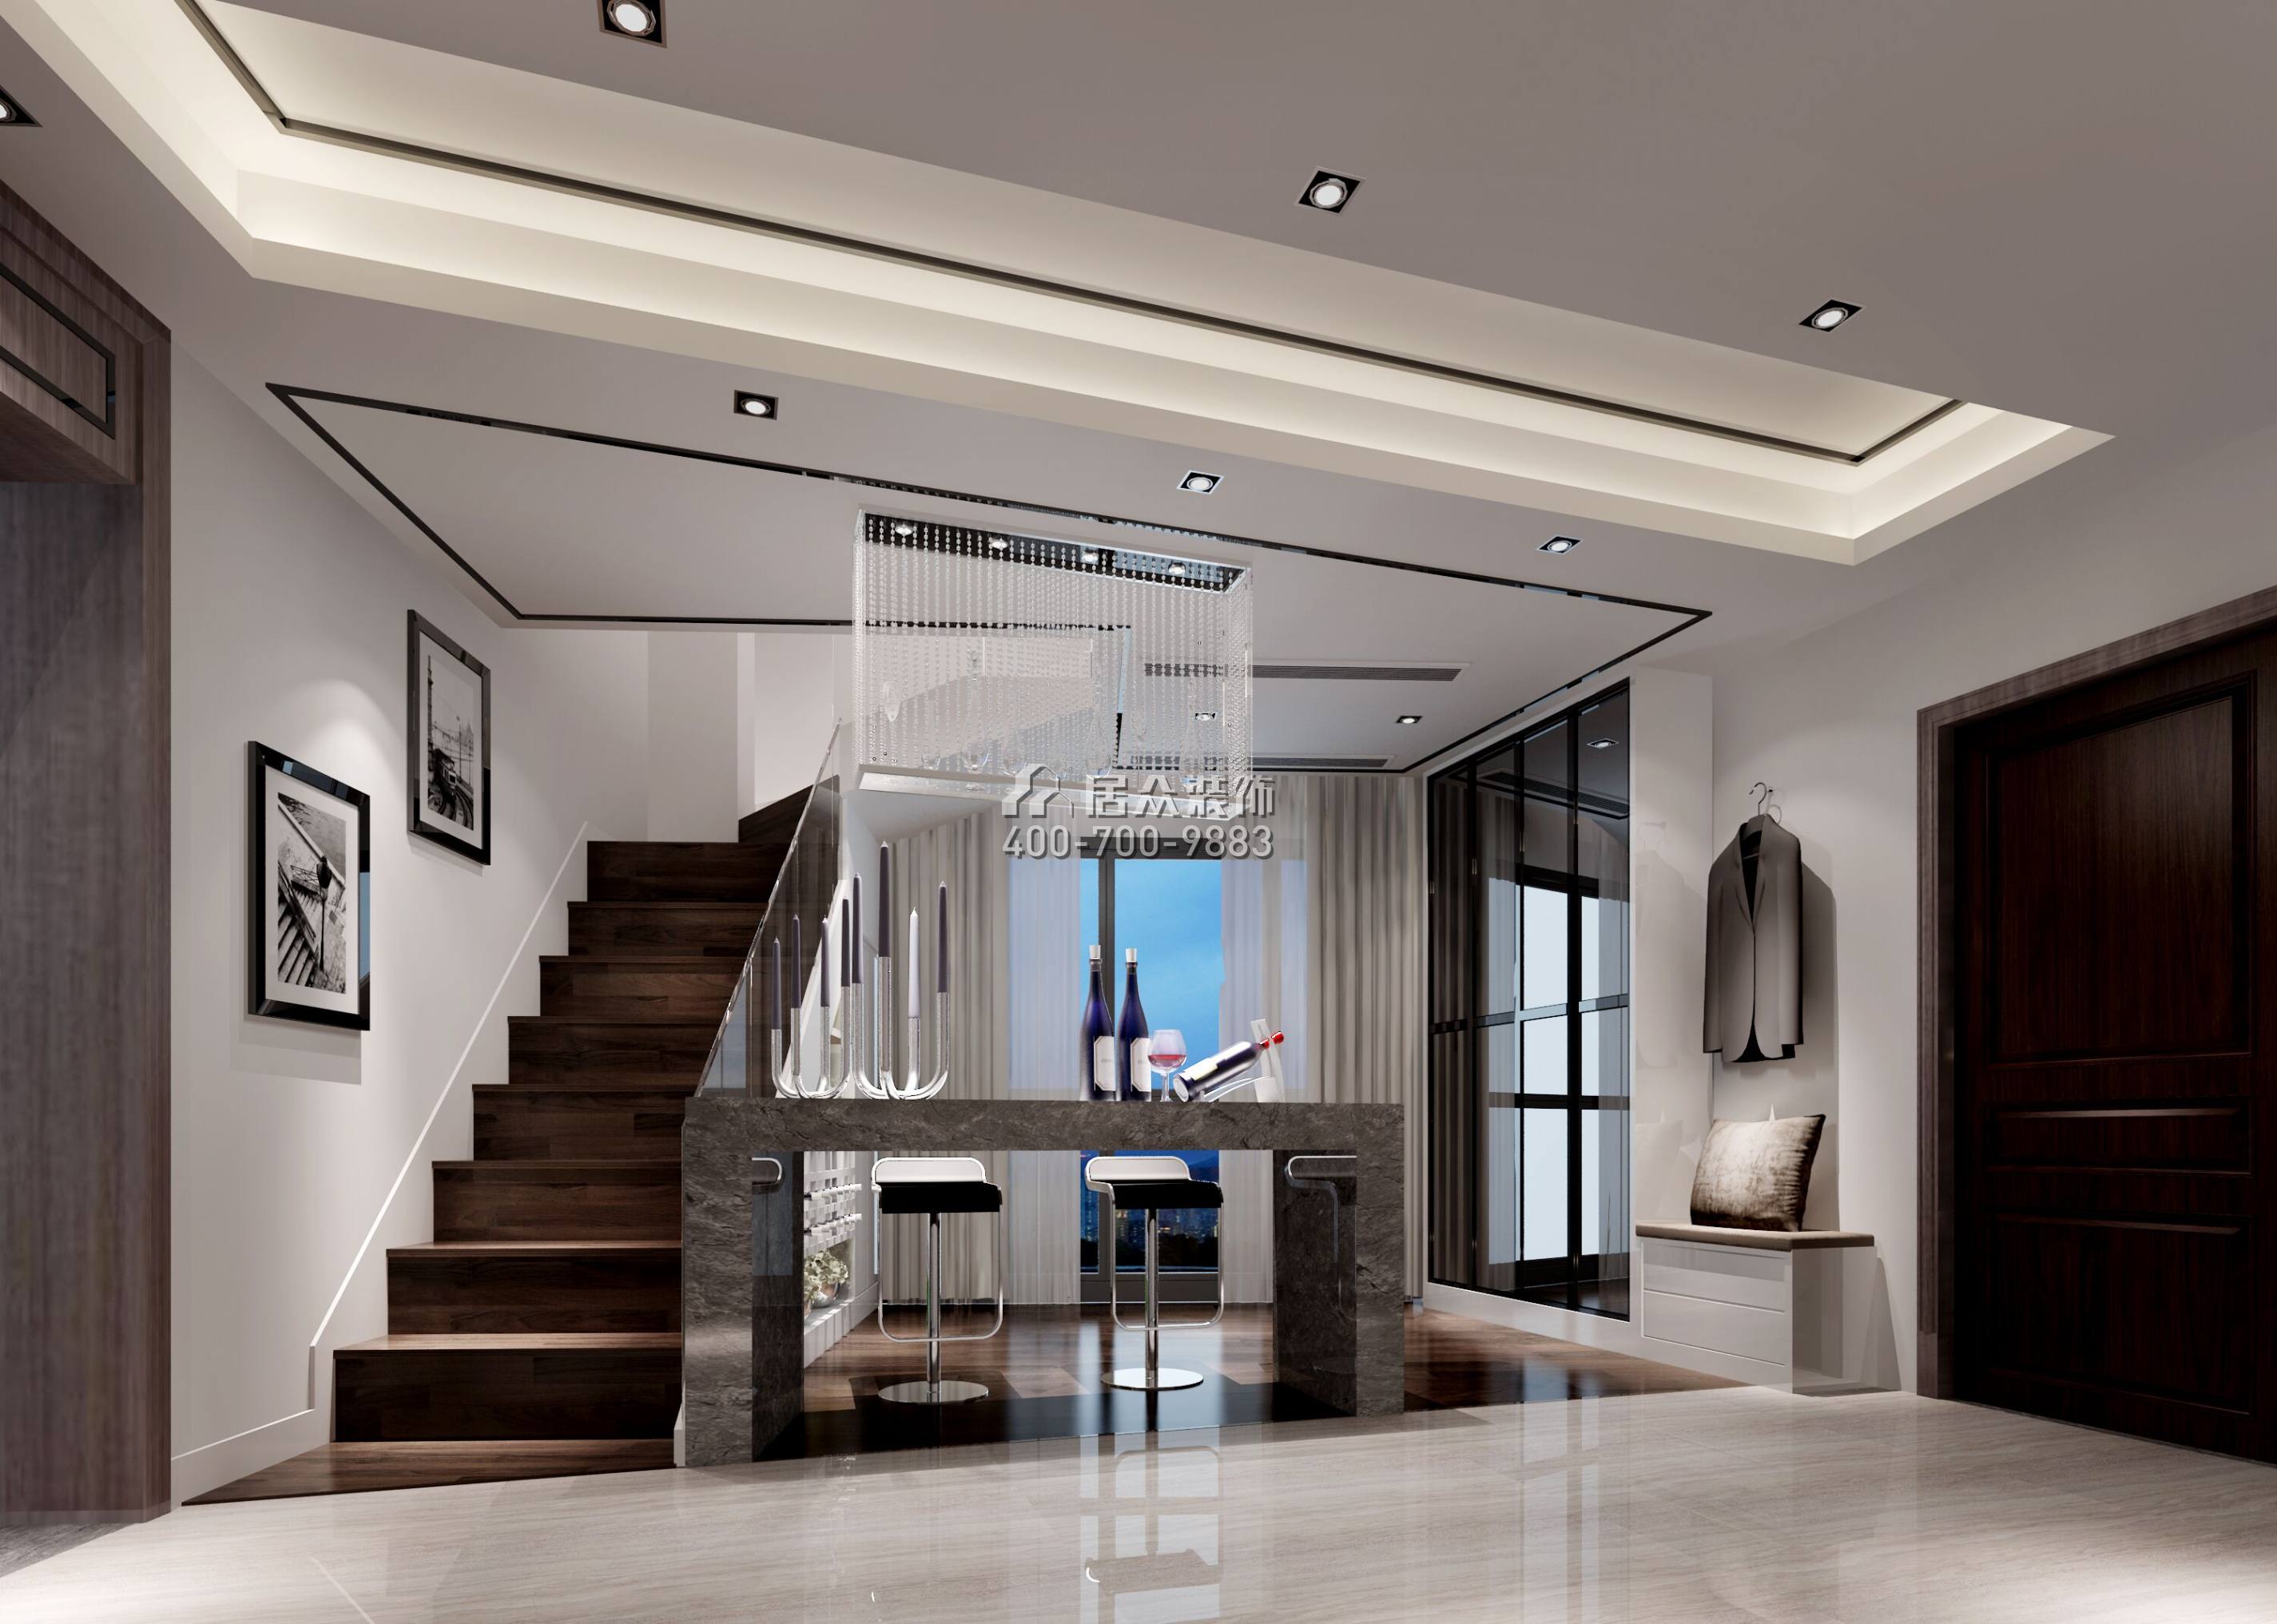 碧海云天140平方米现代简约风格平层户型家庭吧台装修效果图